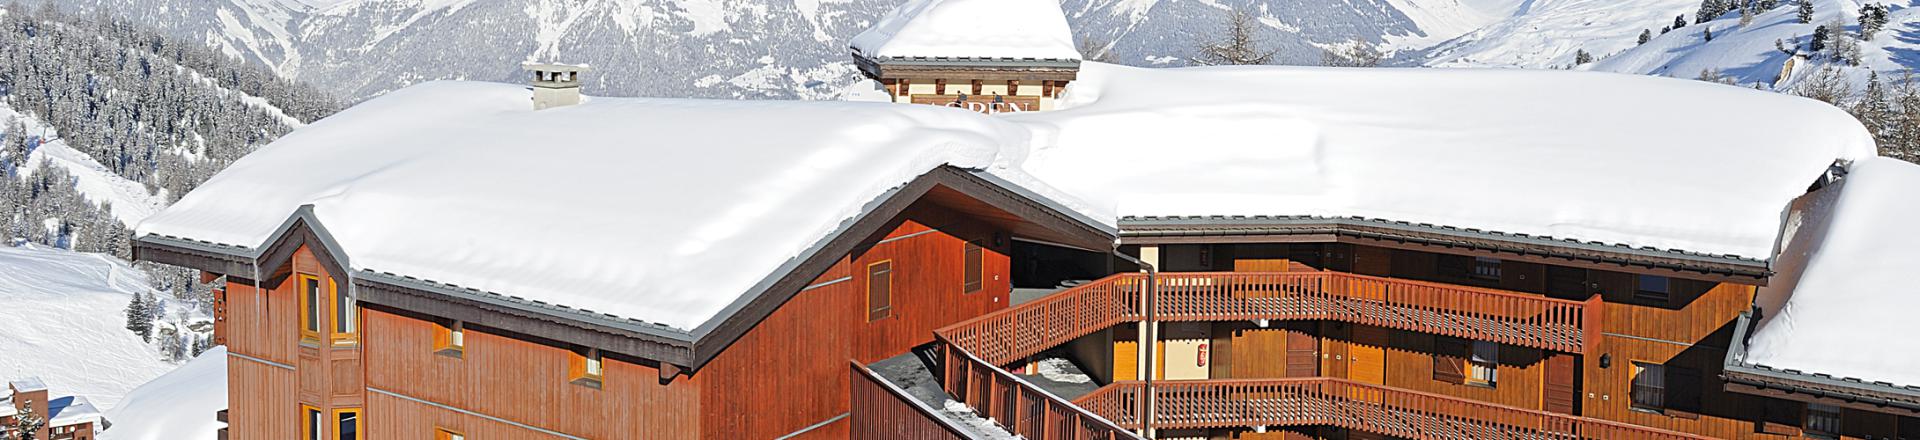 Location au ski Résidence Lagrange Aspen - La Plagne - Extérieur hiver